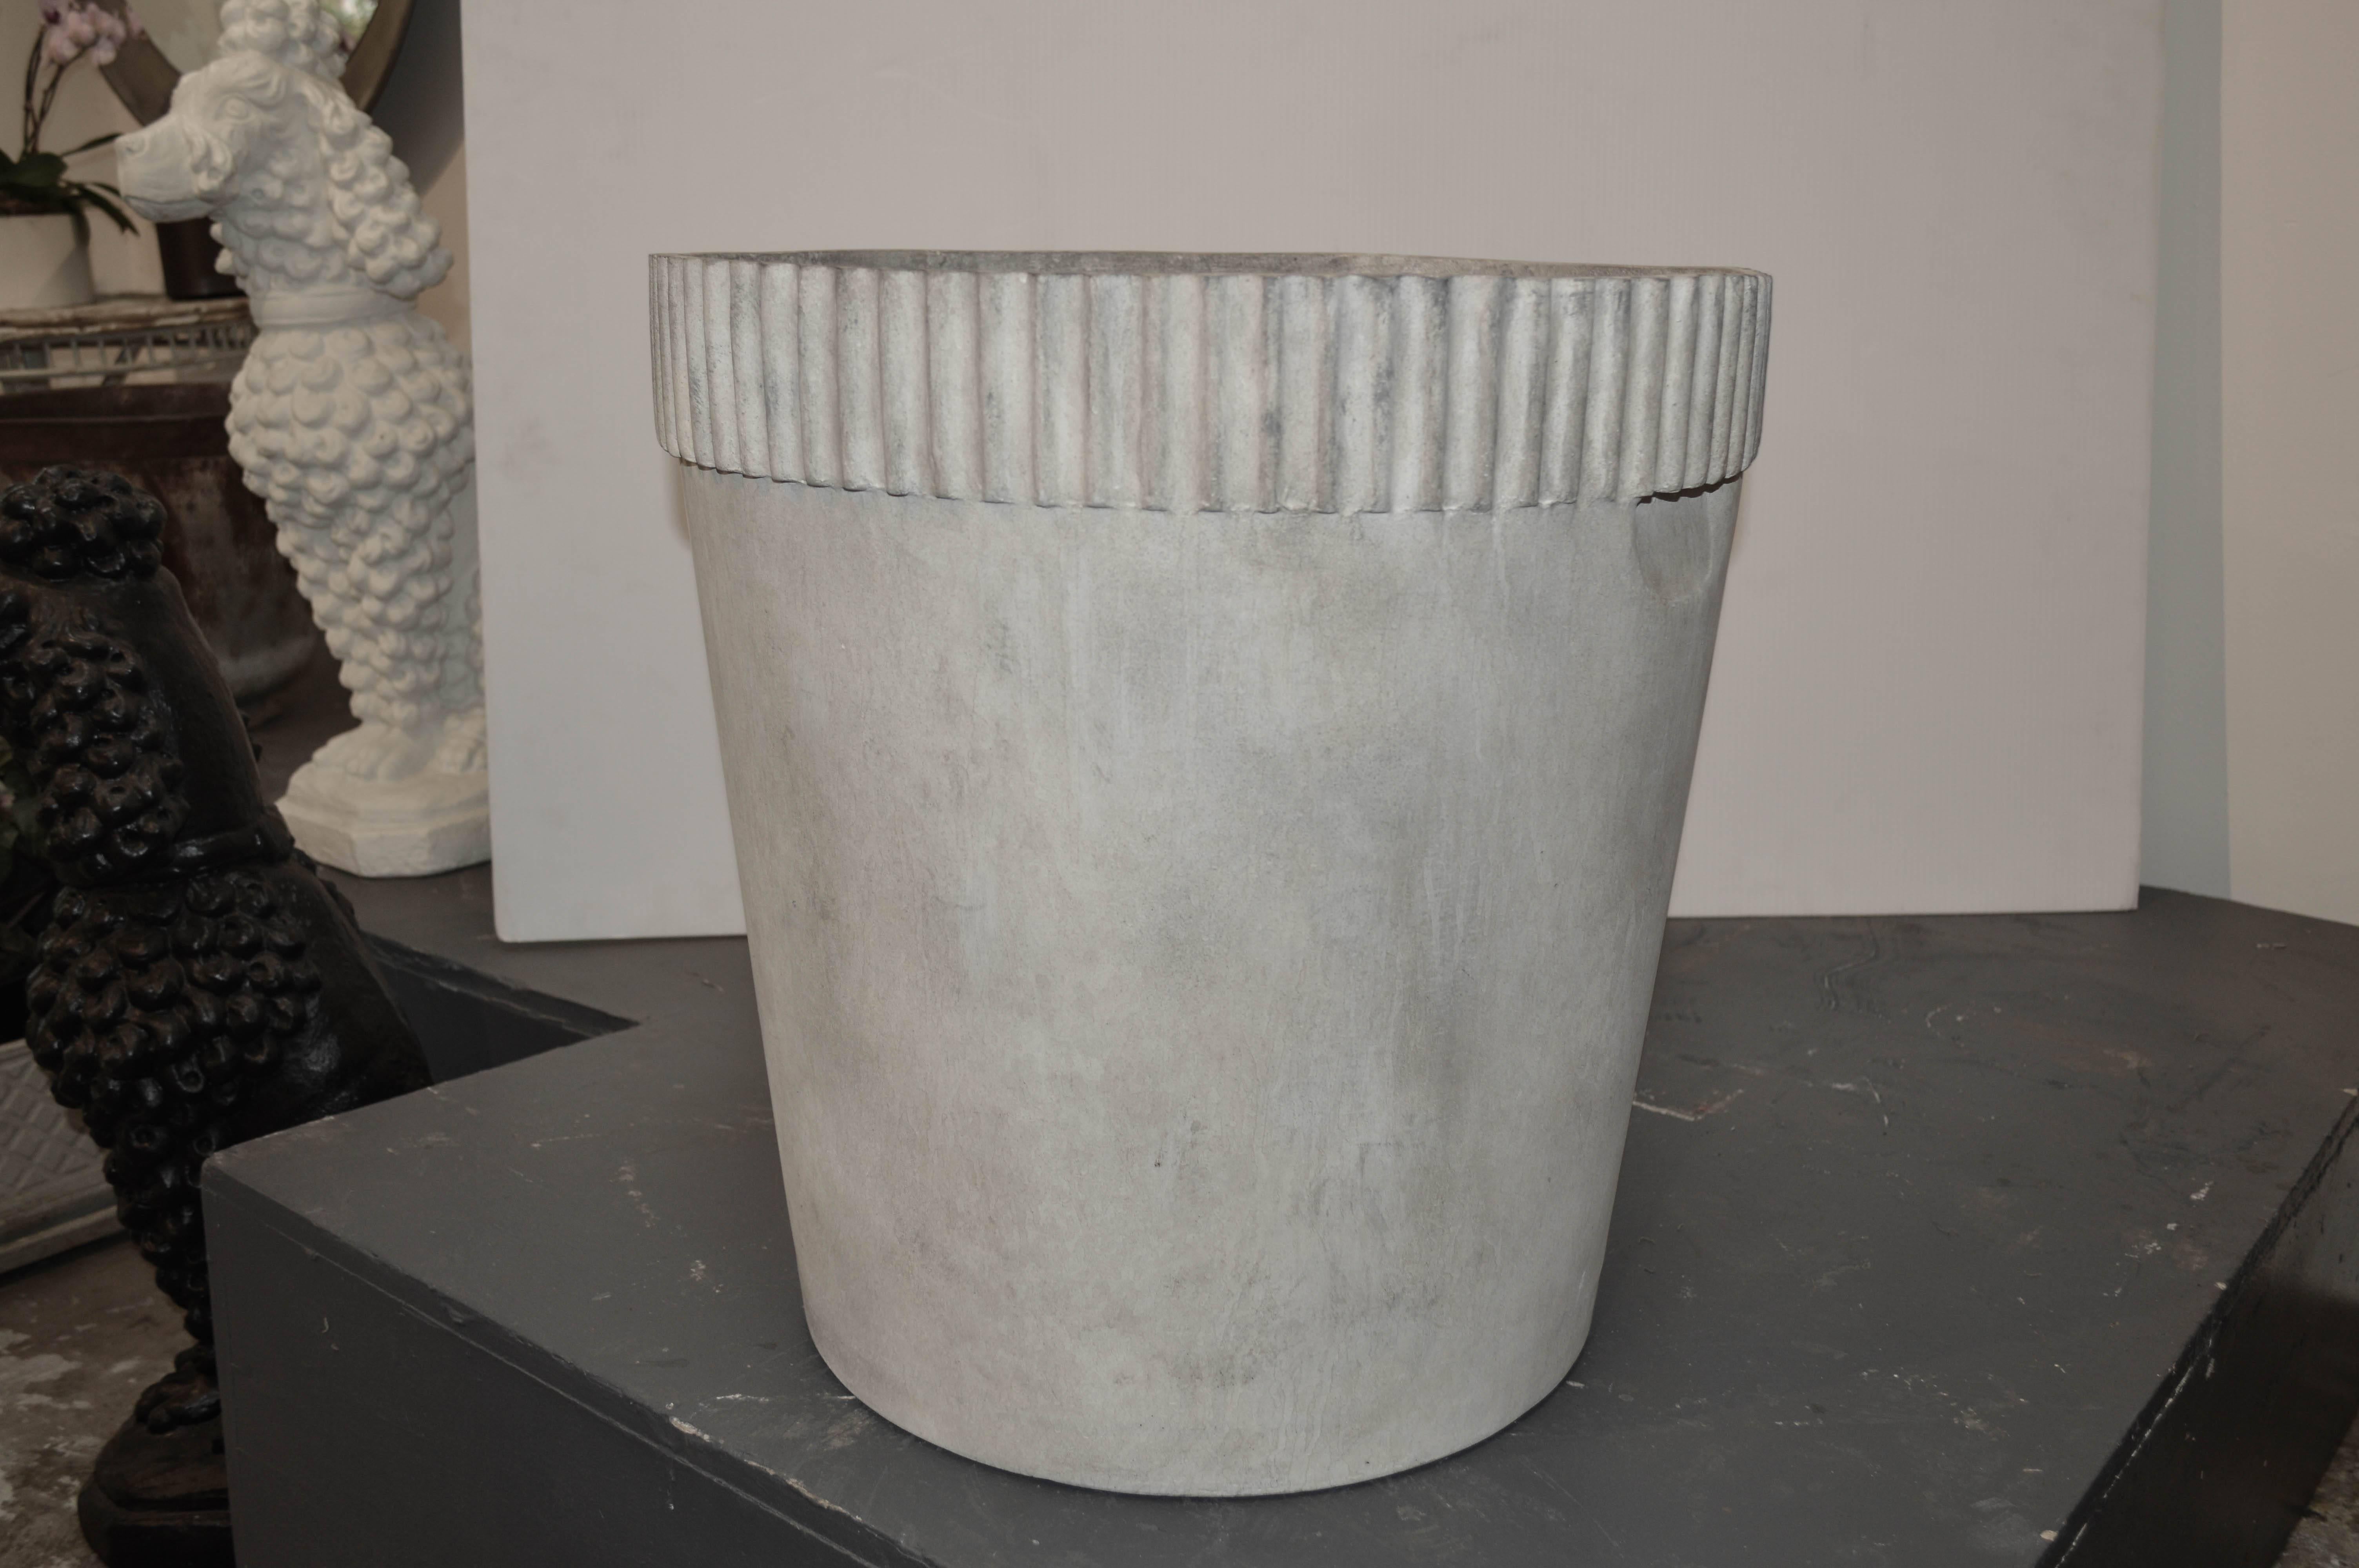 Cast fiber cement planter with ridges.